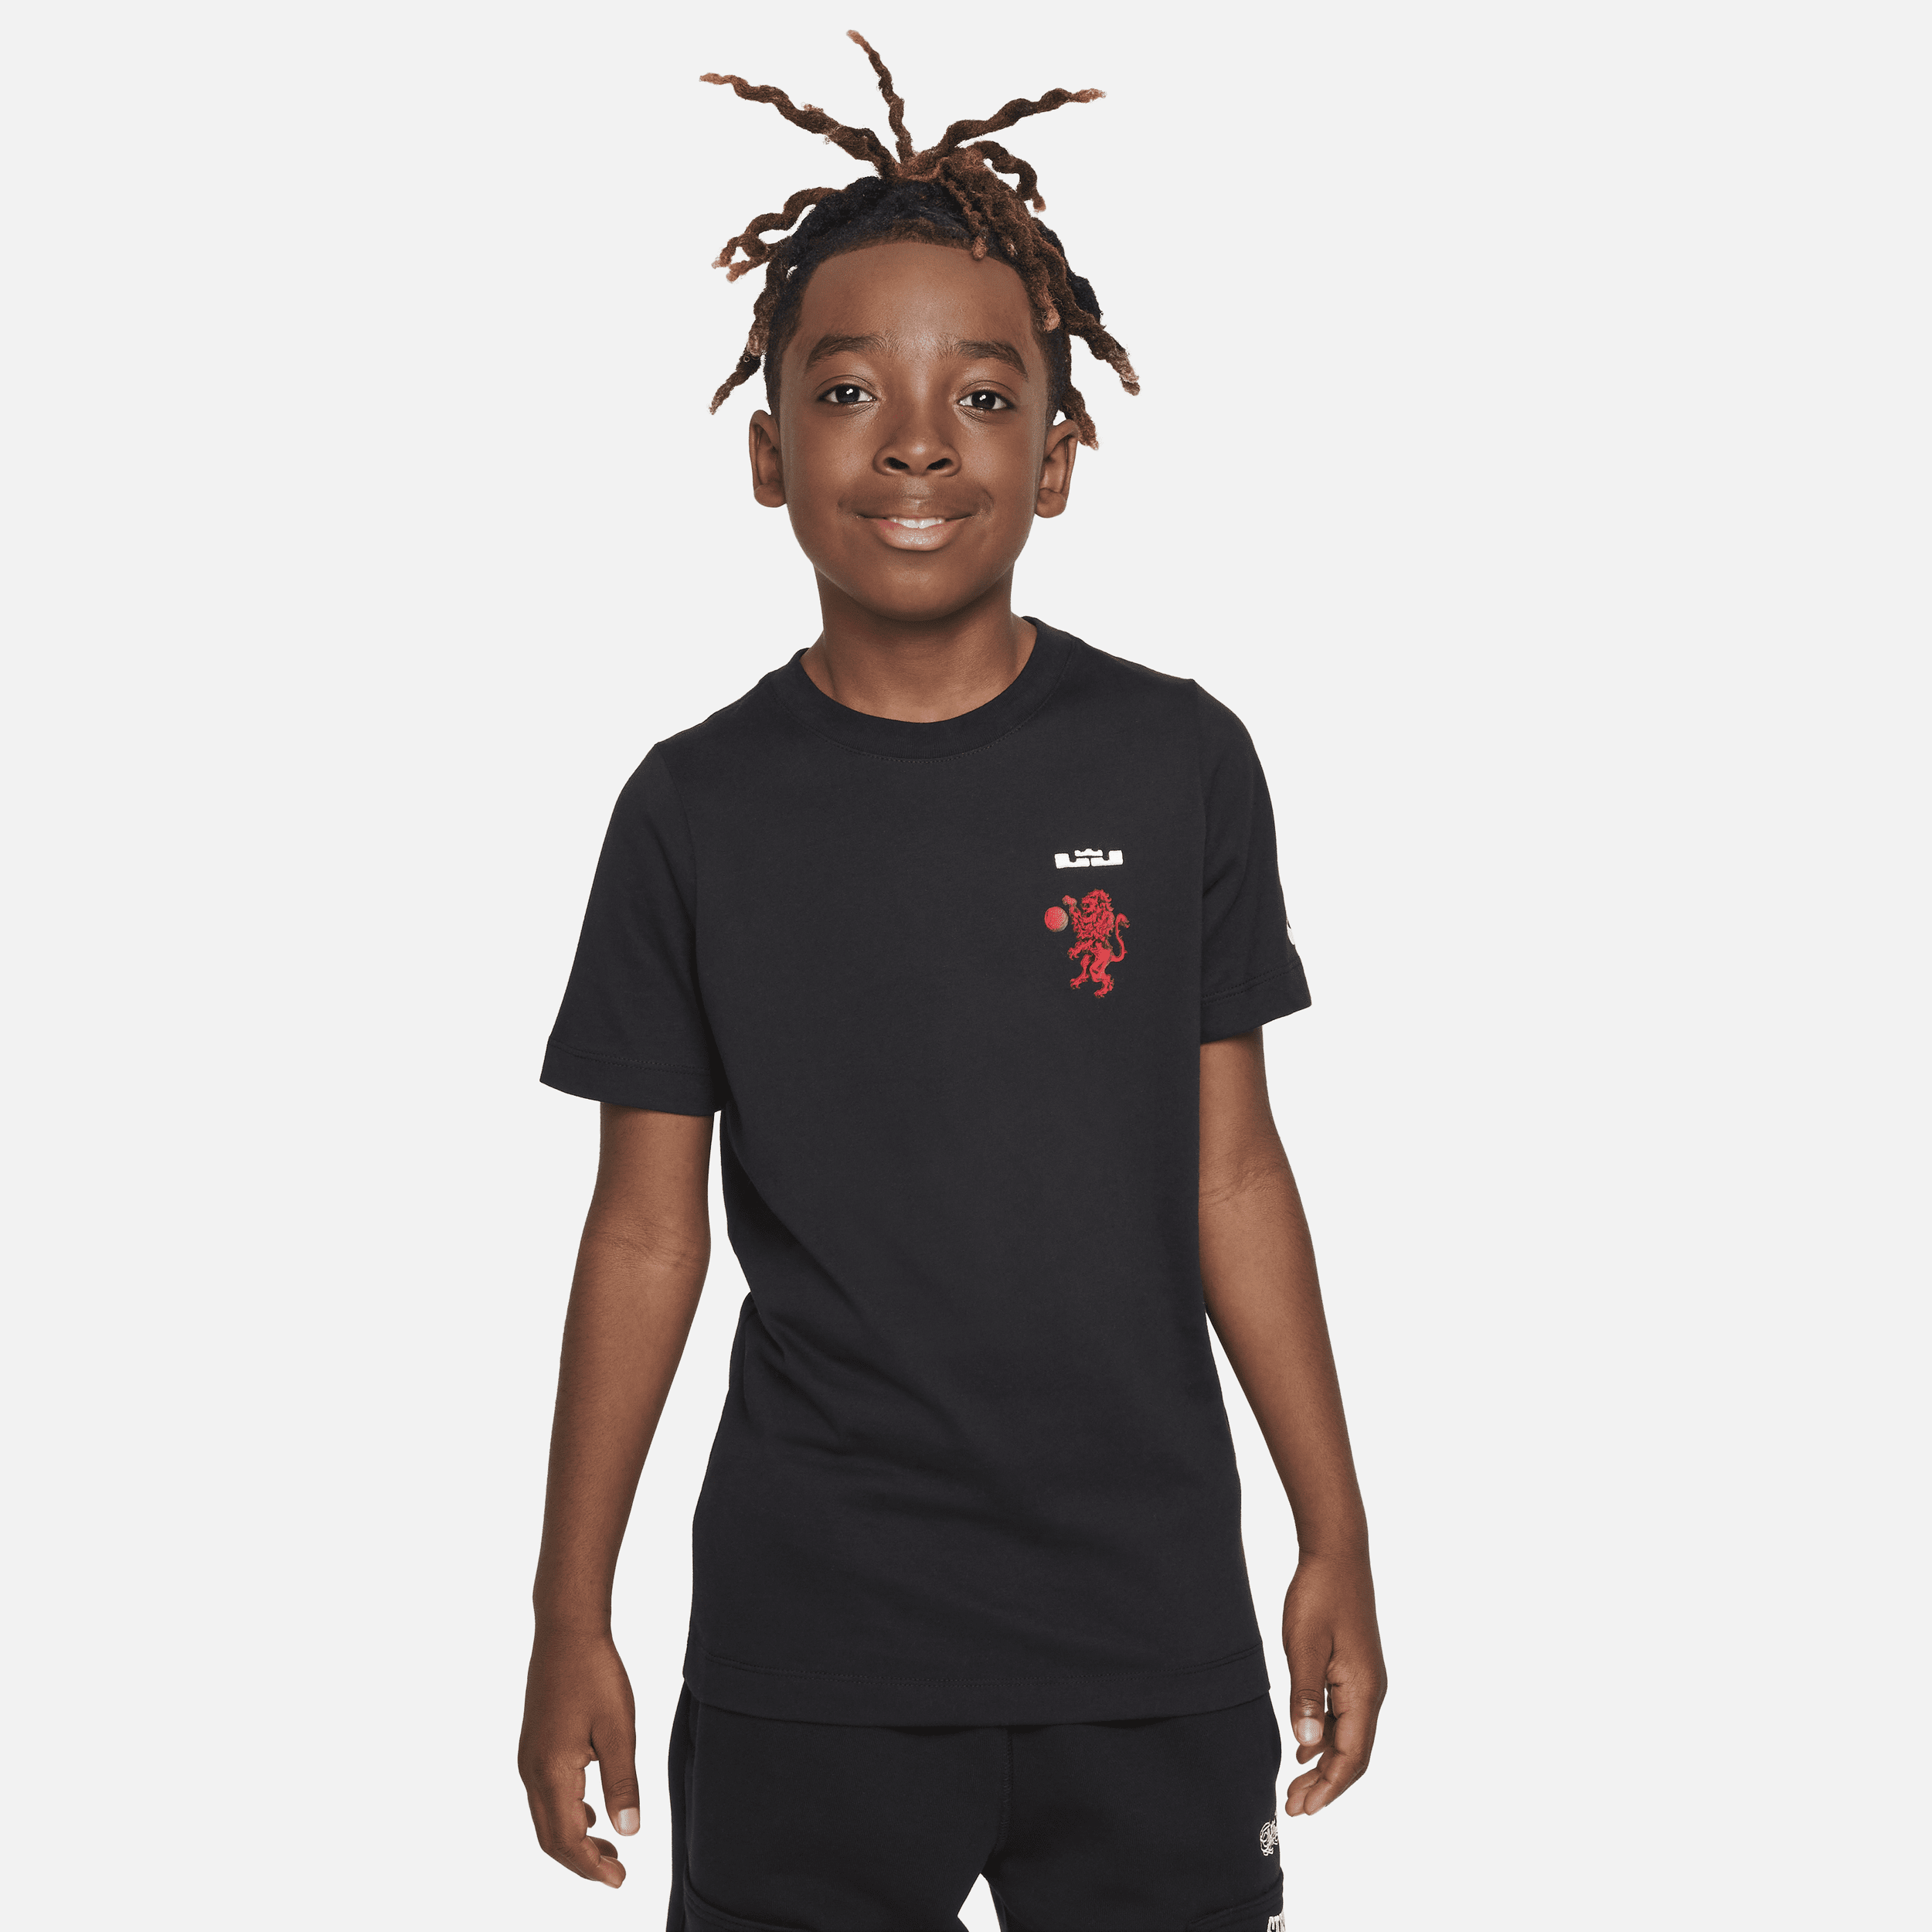 Nike LeBron T-shirt voor kids - Zwart